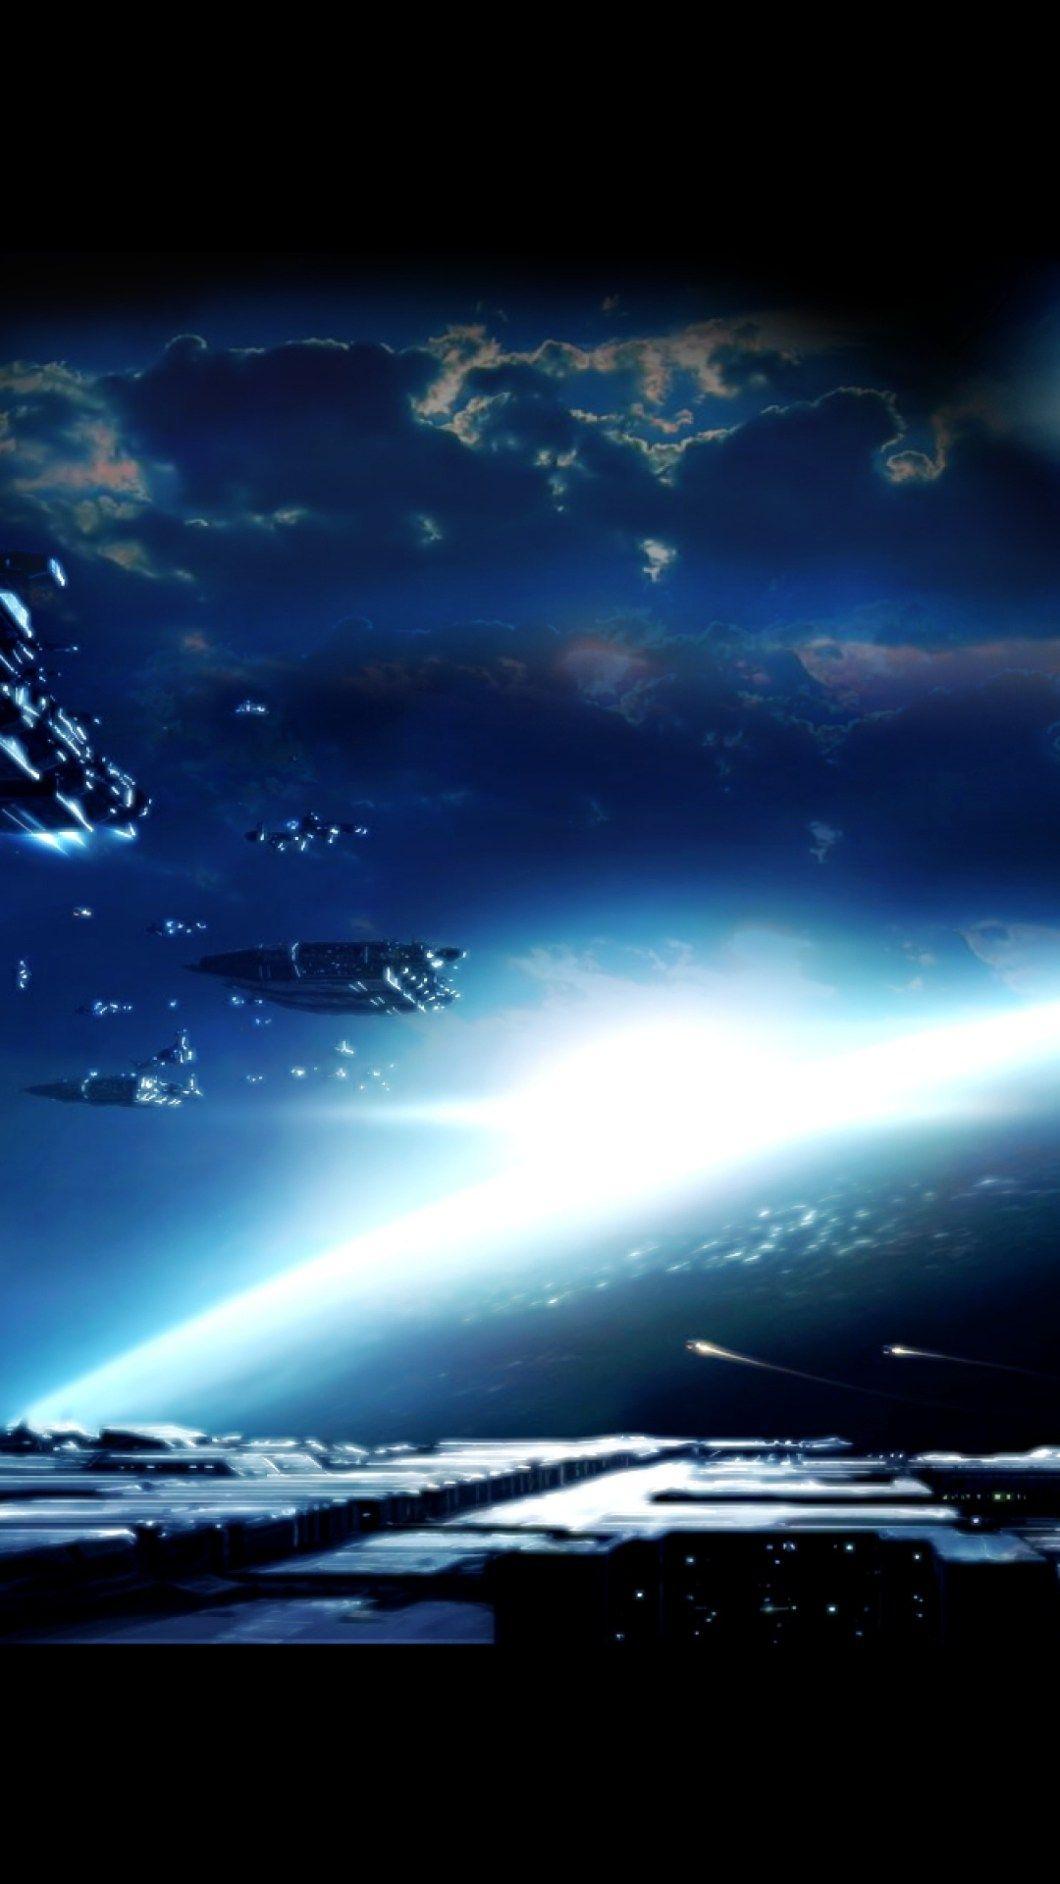 Mass Effect 3 iPhone Wallpaper